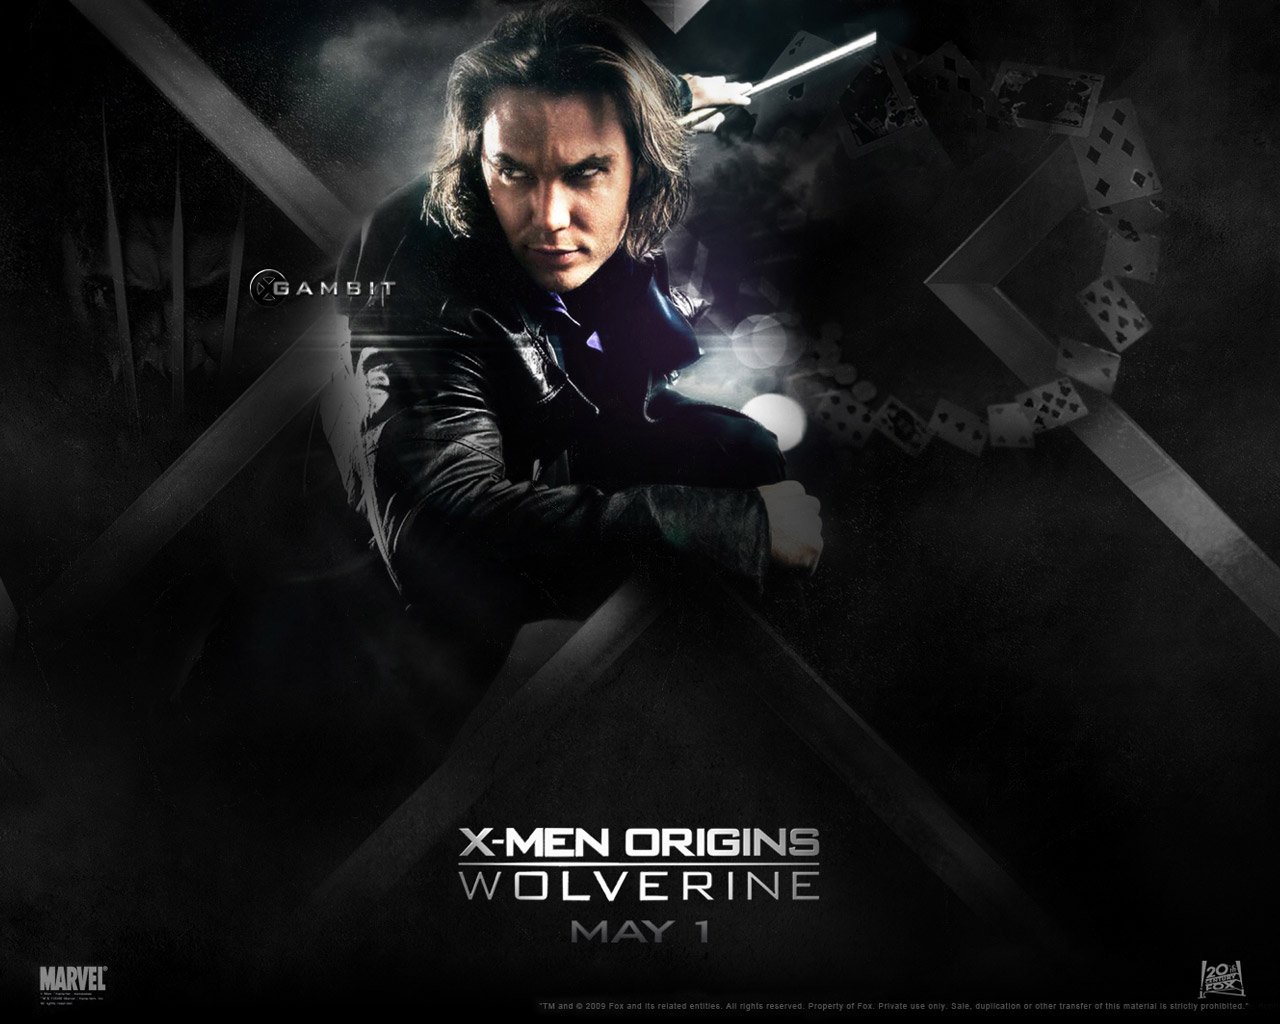 X-Men X-Men Origins: Wolverine Wallpaper - Gambit Wallpaper - X-Men X-Men  Origins: Wolverine Wallpaper - Gambit Backgrounds (1280 x 1024)